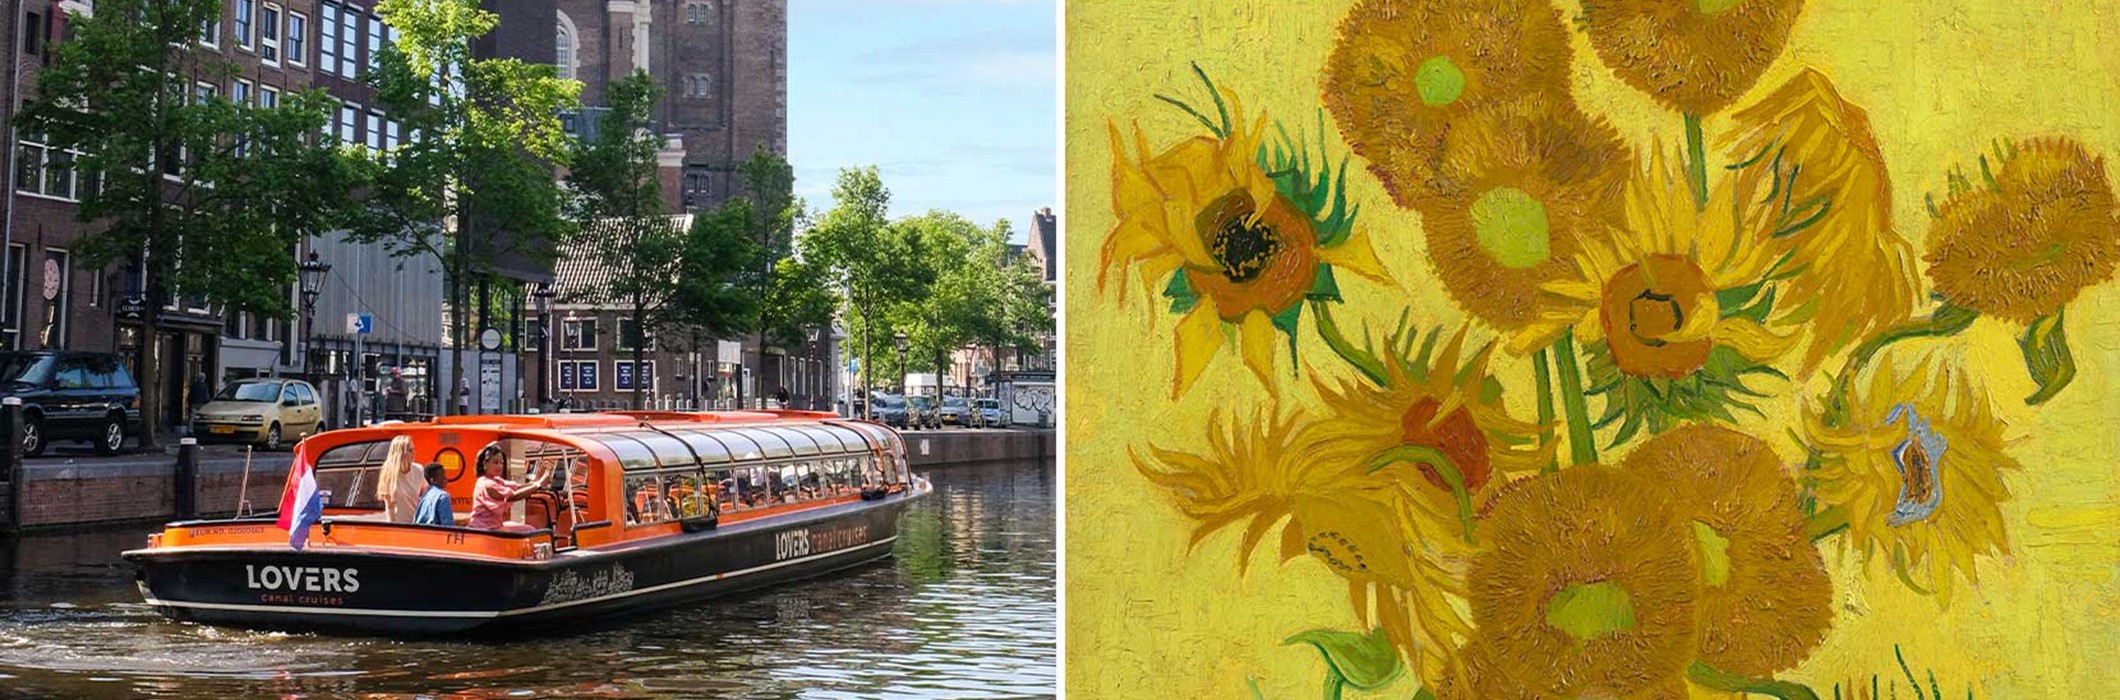 Van Gogh Museum + Croisière sur les canaux d'Amsterdam